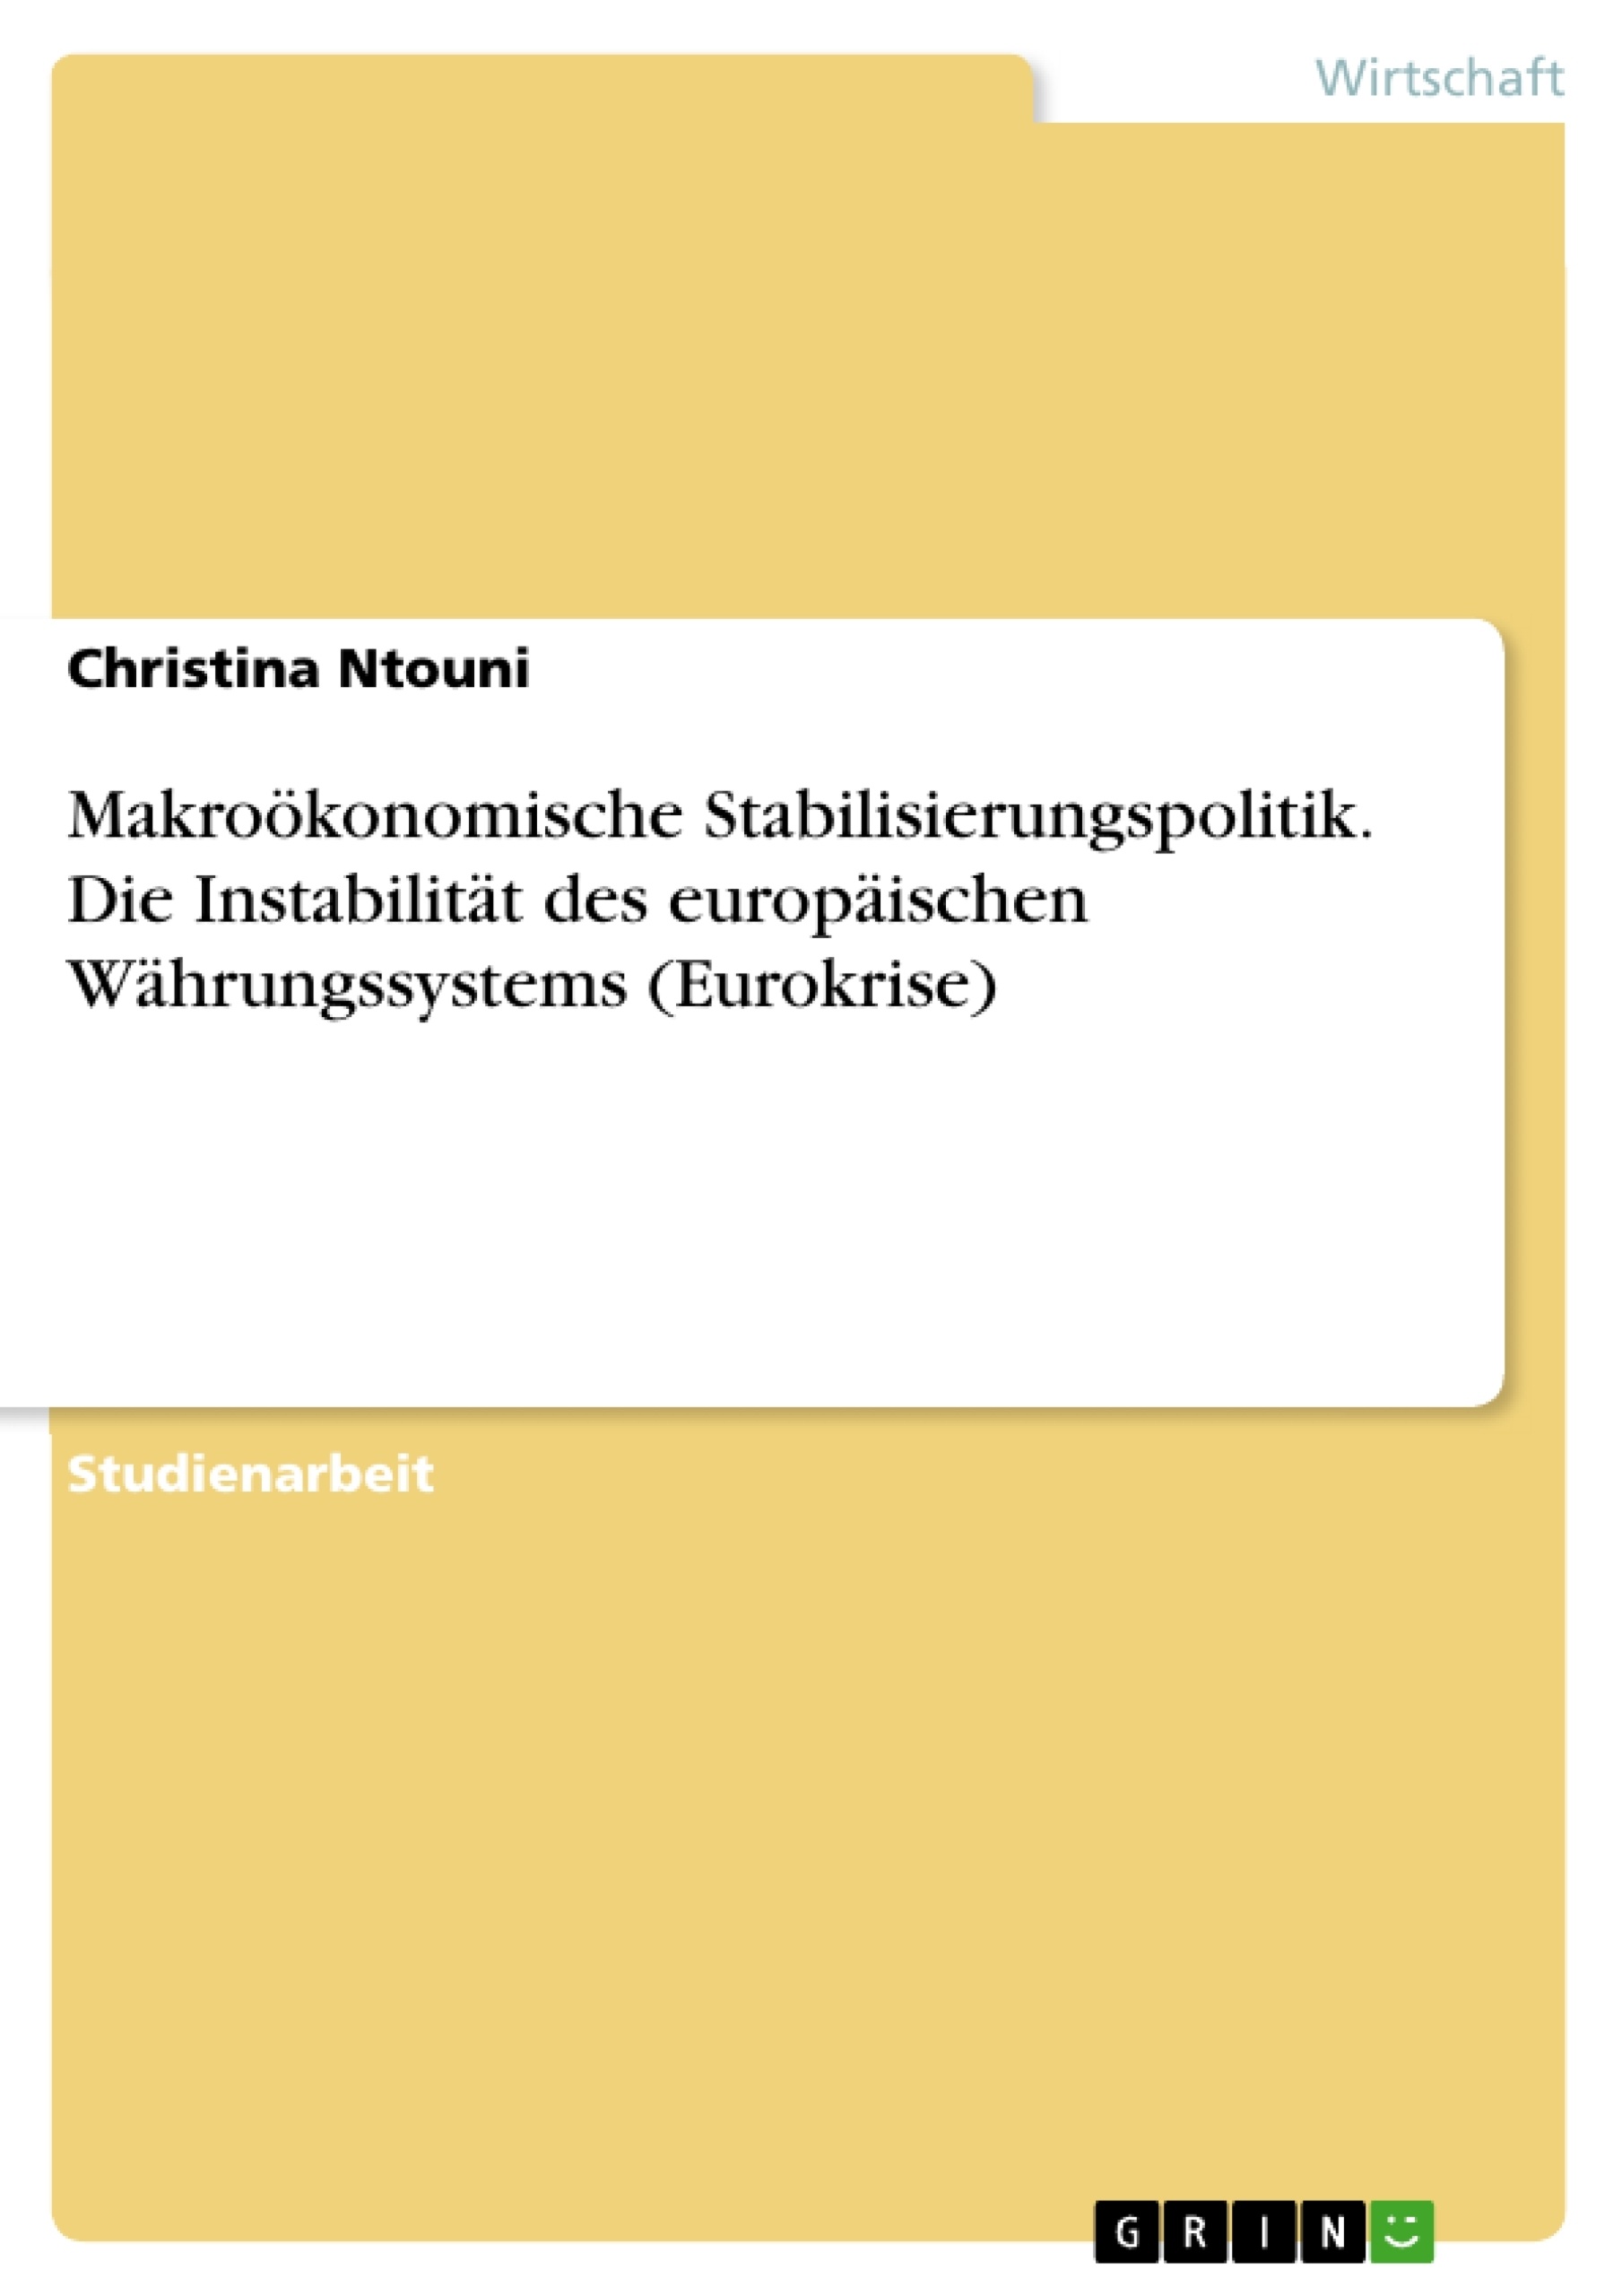 Title: Makroökonomische Stabilisierungspolitik. Die Instabilität des europäischen Währungssystems (Eurokrise)